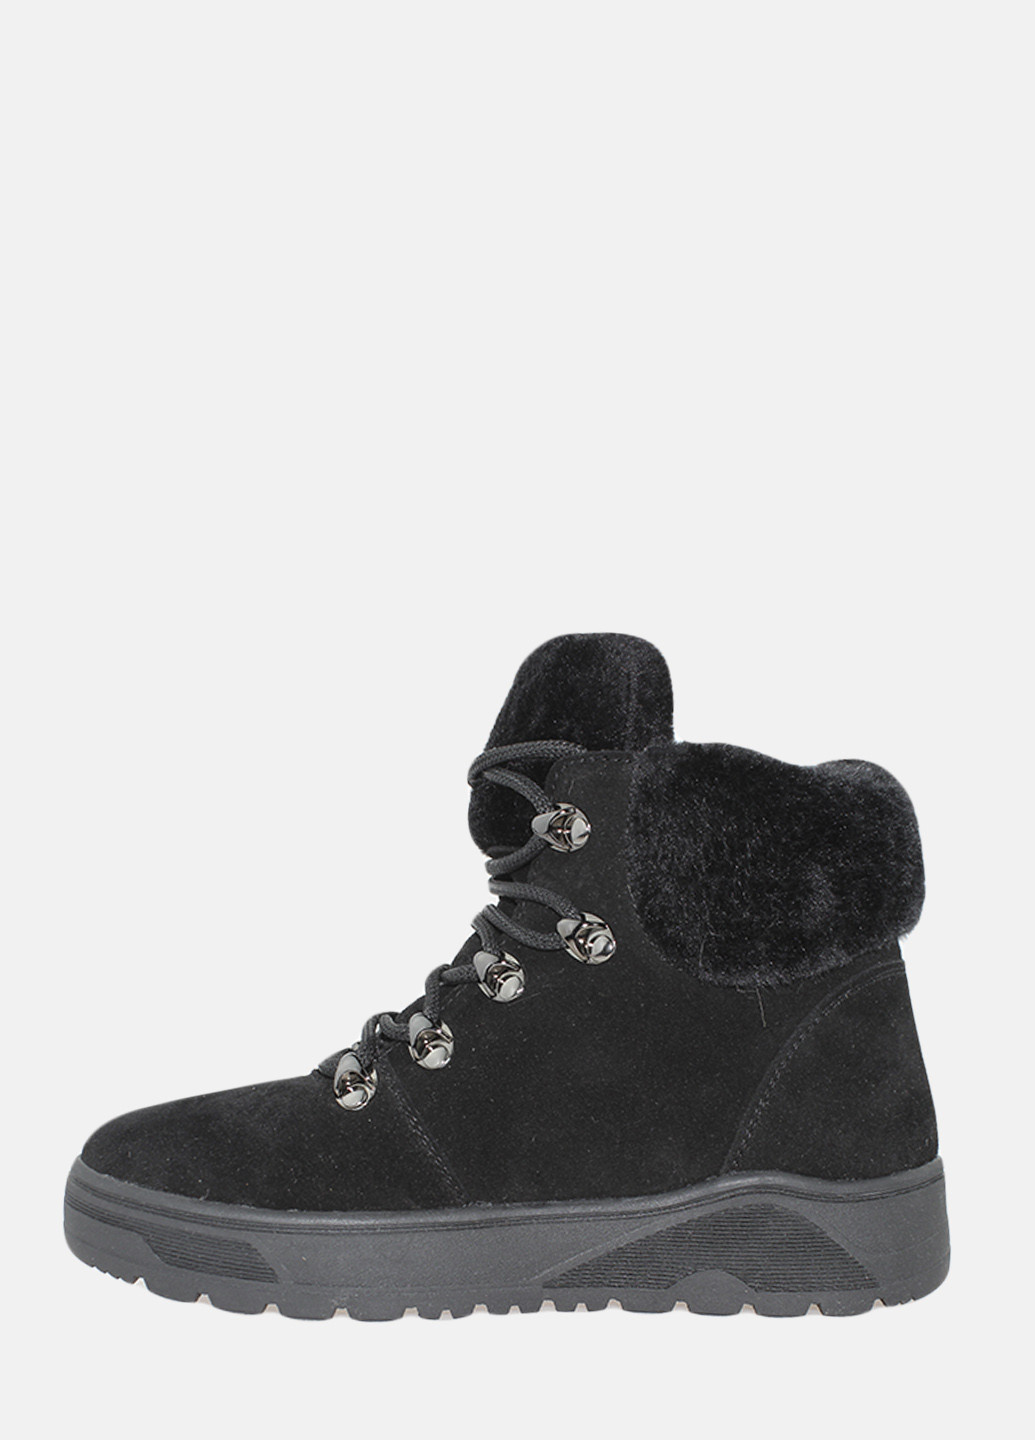 Осенние ботинки r40003-11 черный Masis из натуральной замши